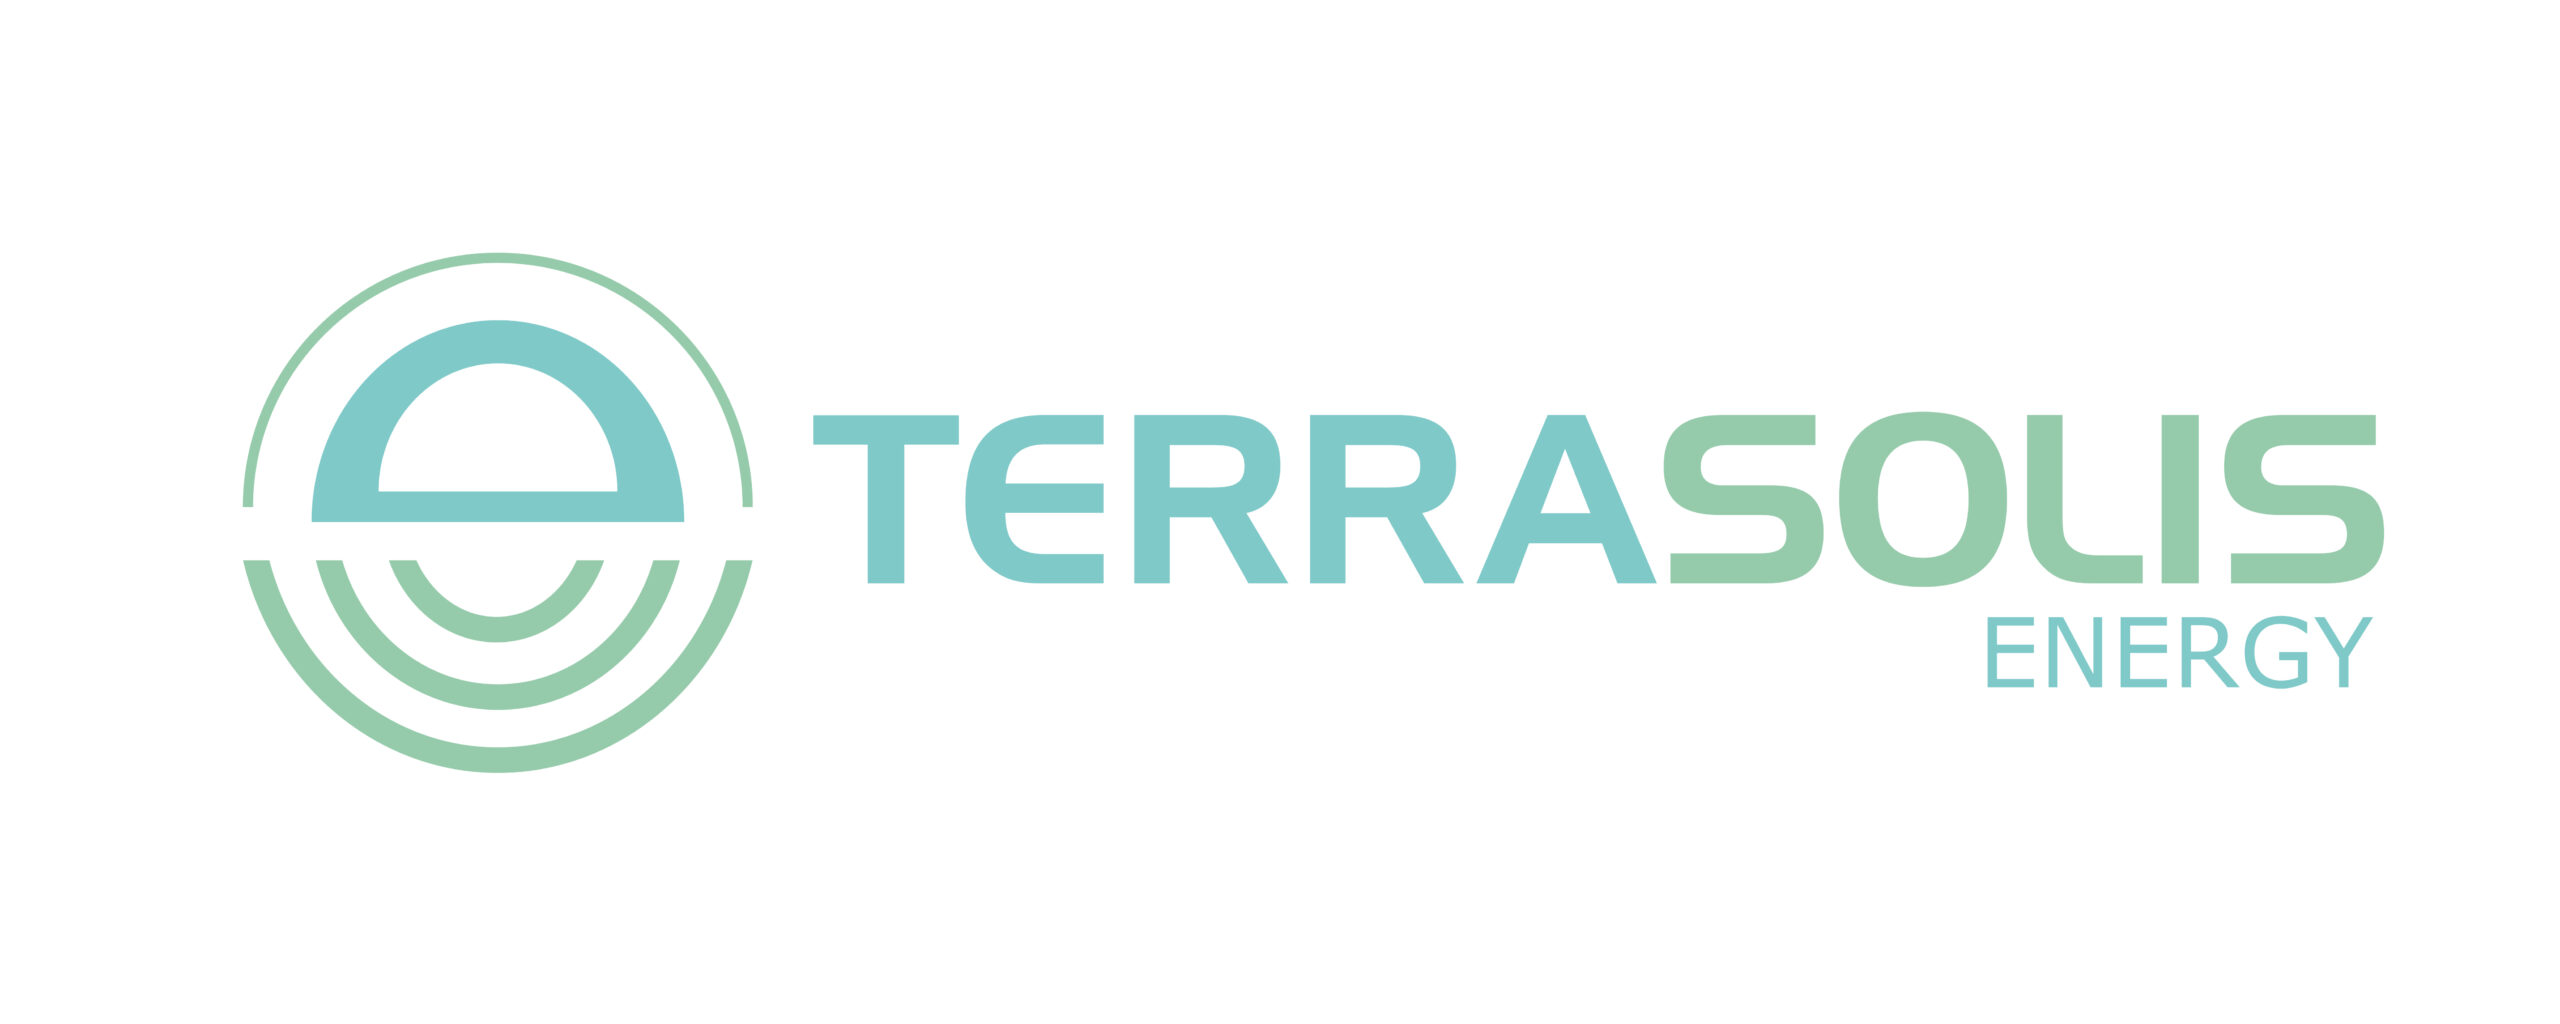 Terrasolis Energy